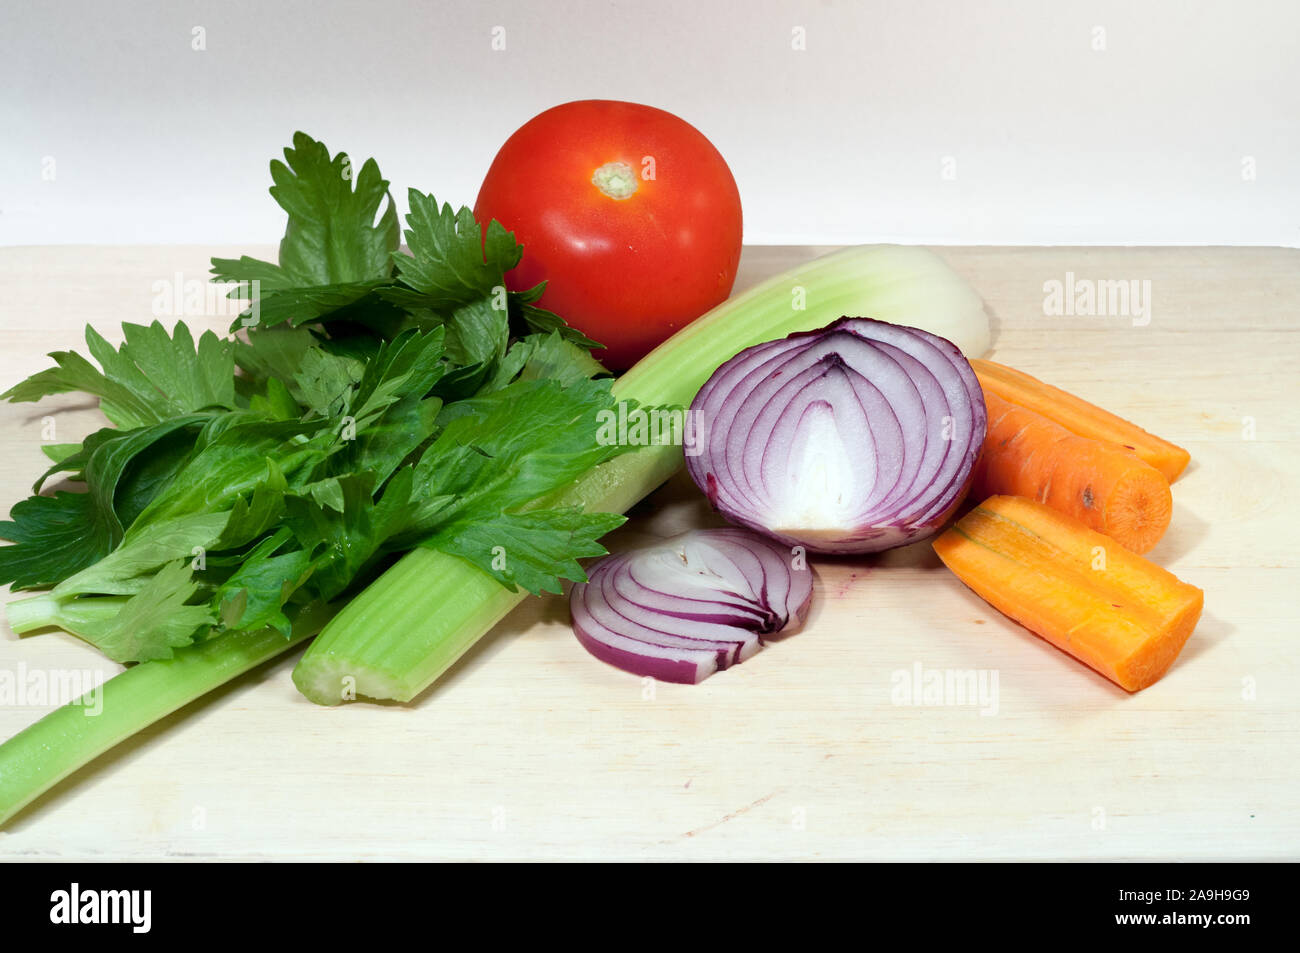 Le céleri, la carotte, l'oignon et et la tomate. Soupe de légumes ingrédients sur planche à découper Banque D'Images